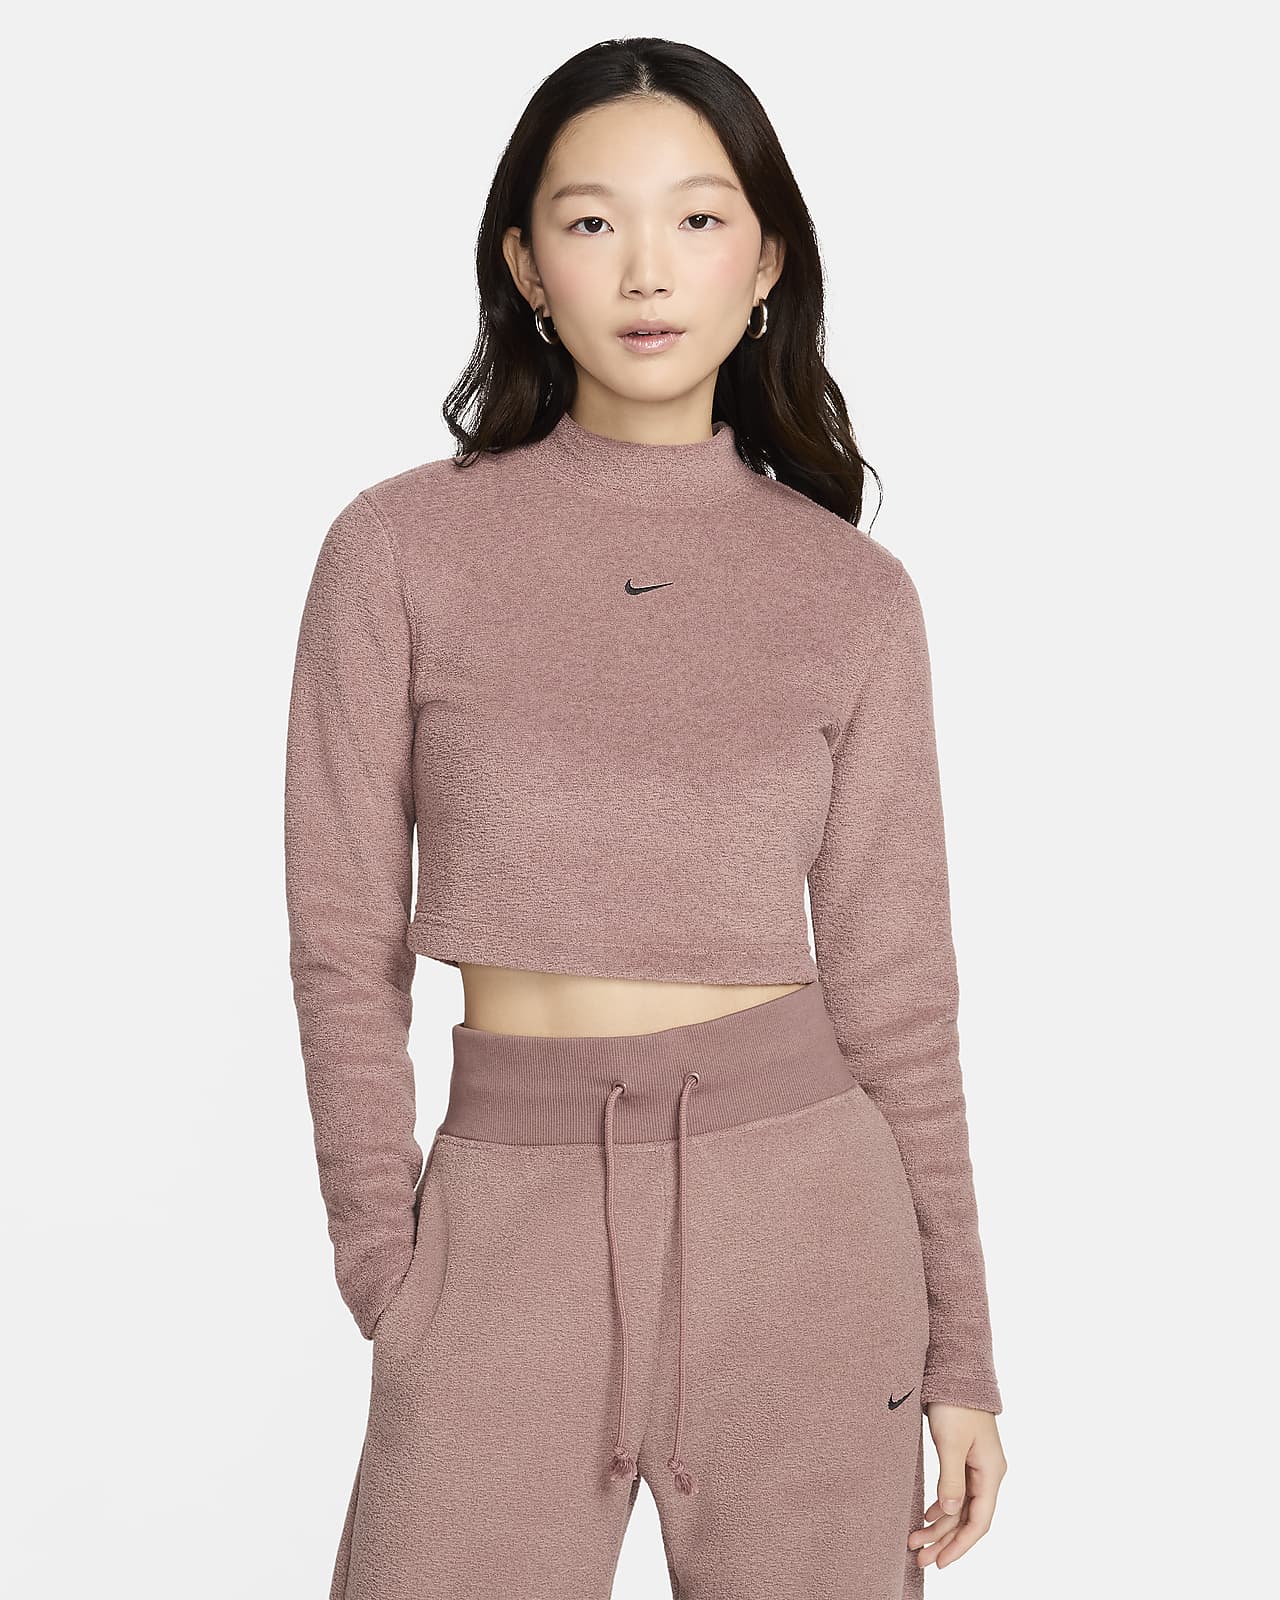 Nike Sportswear Phoenix Plush Women's Slim Long-Sleeve Cropped Cozy Fleece Top